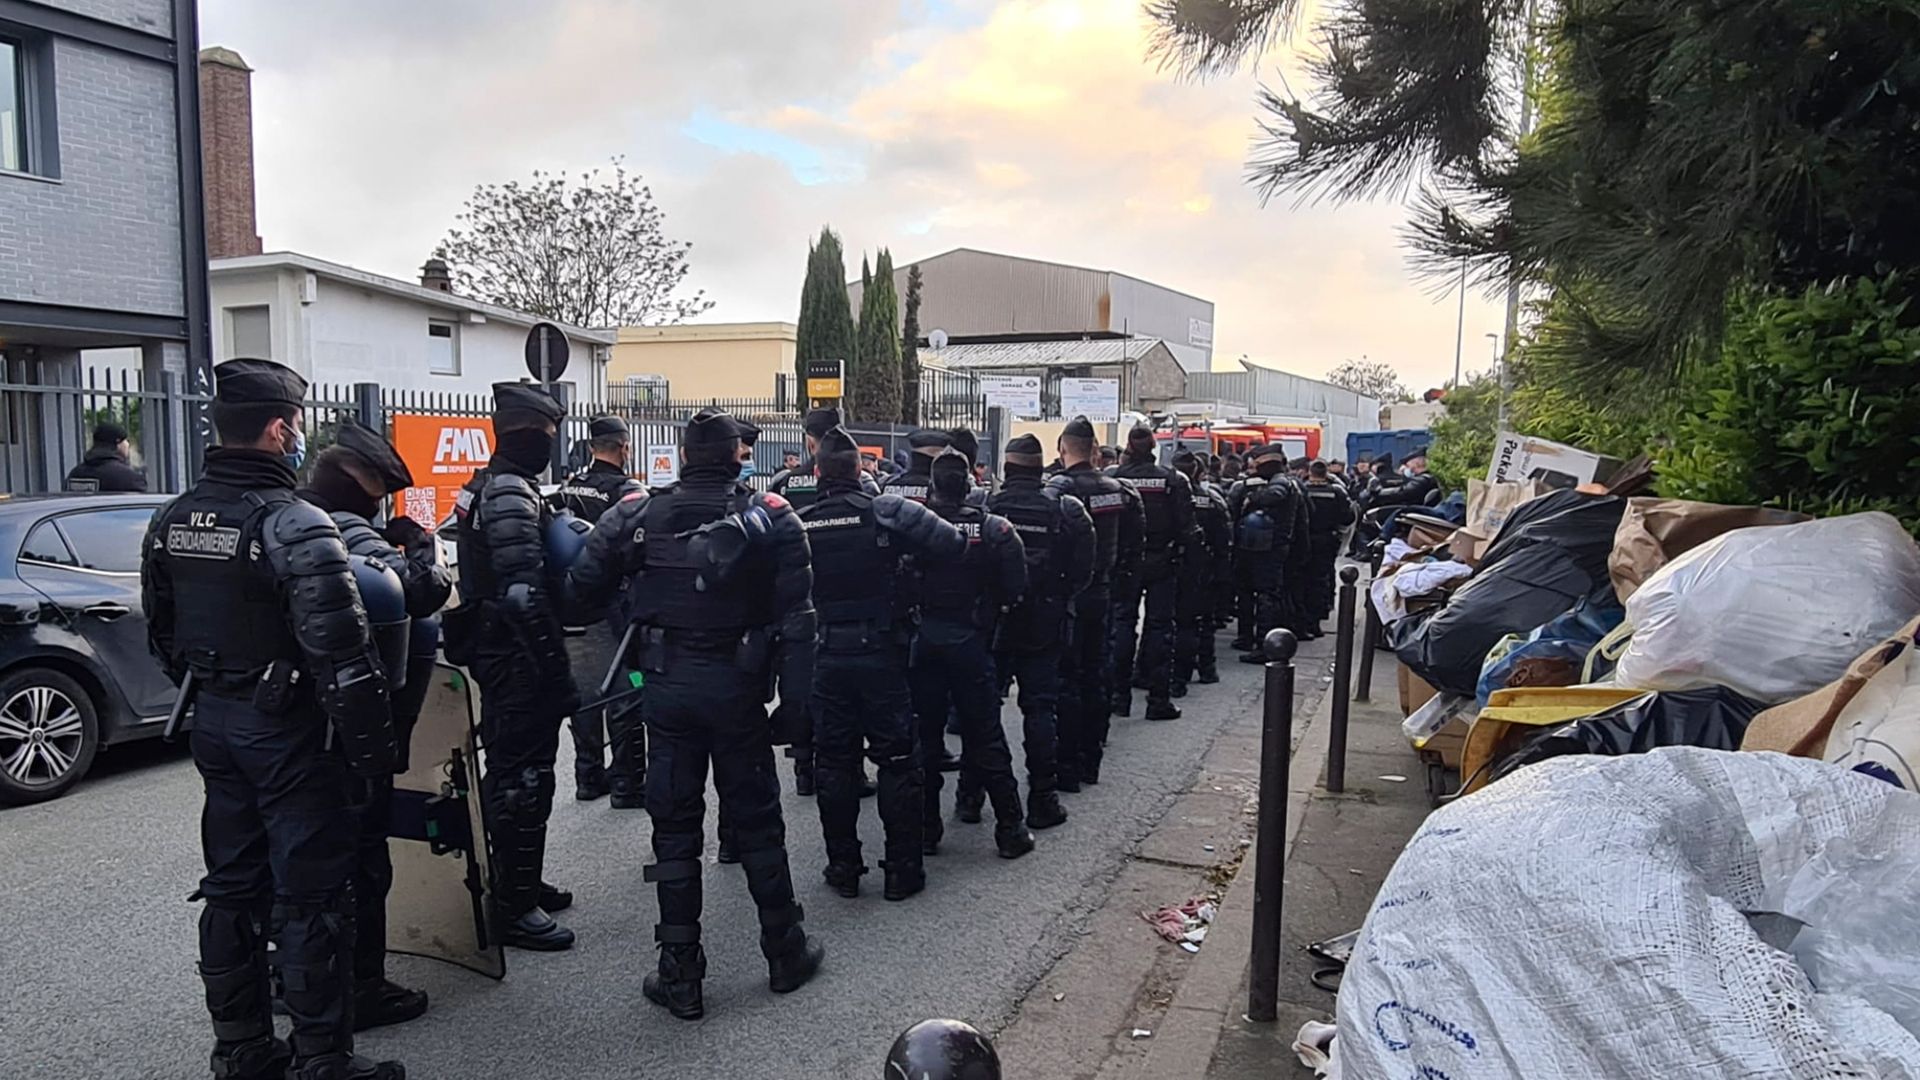 französische polizei räumt besetztes haus mit 450 geflüchteten